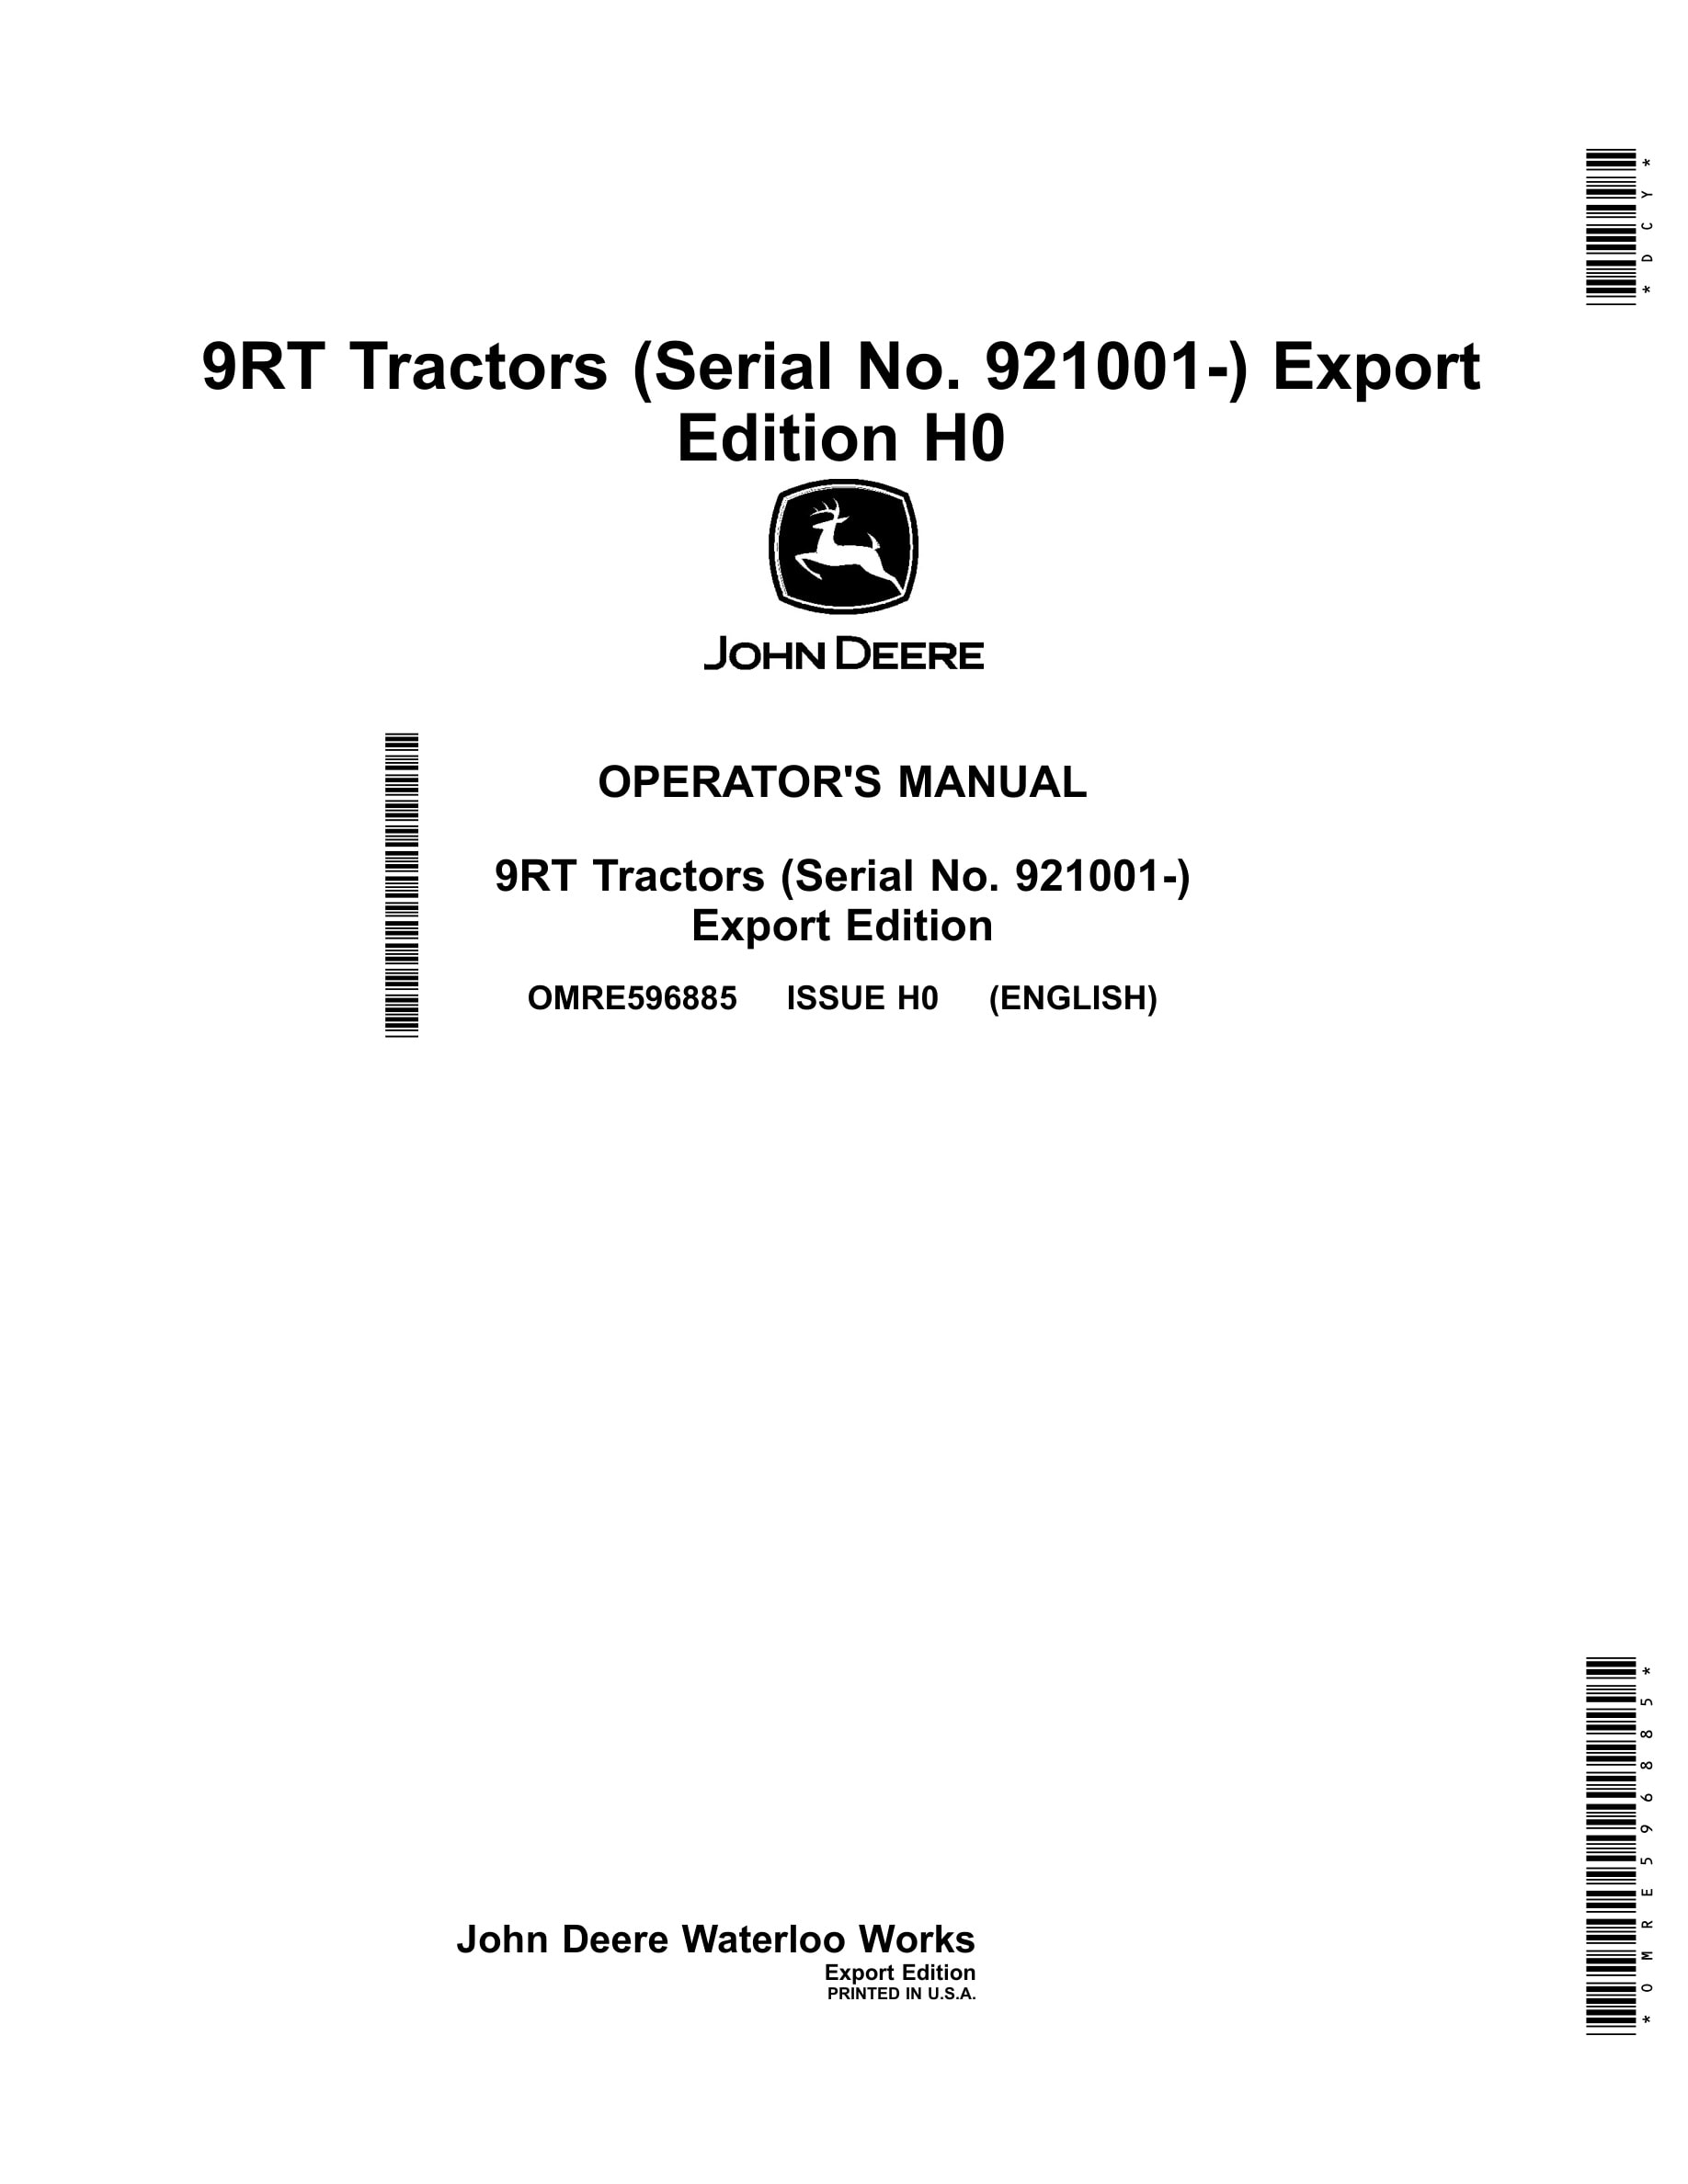 John Deere 9rt Tractors Operator Manuals OMRE596885-1